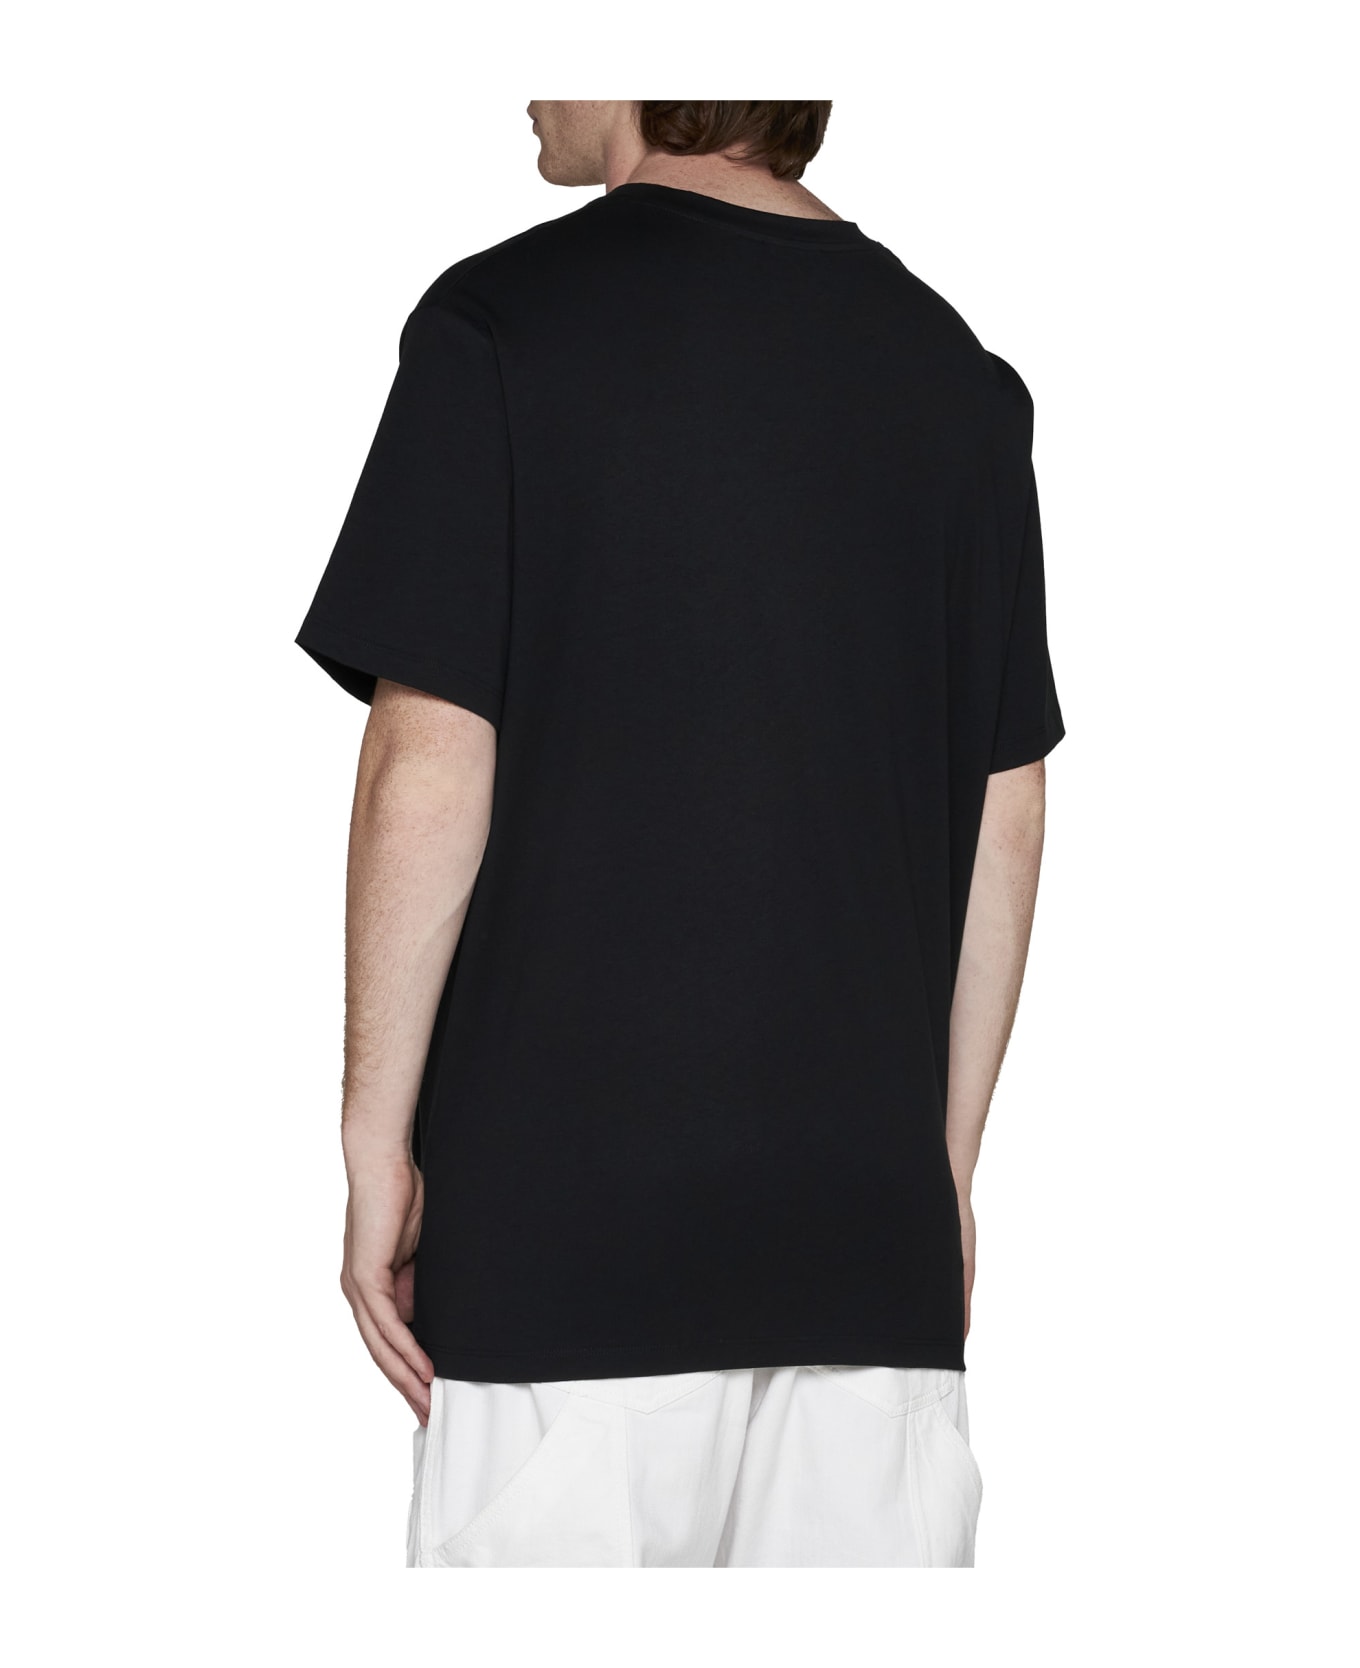 Balmain Logo Cotton T-shirt - Oir/noir/argent